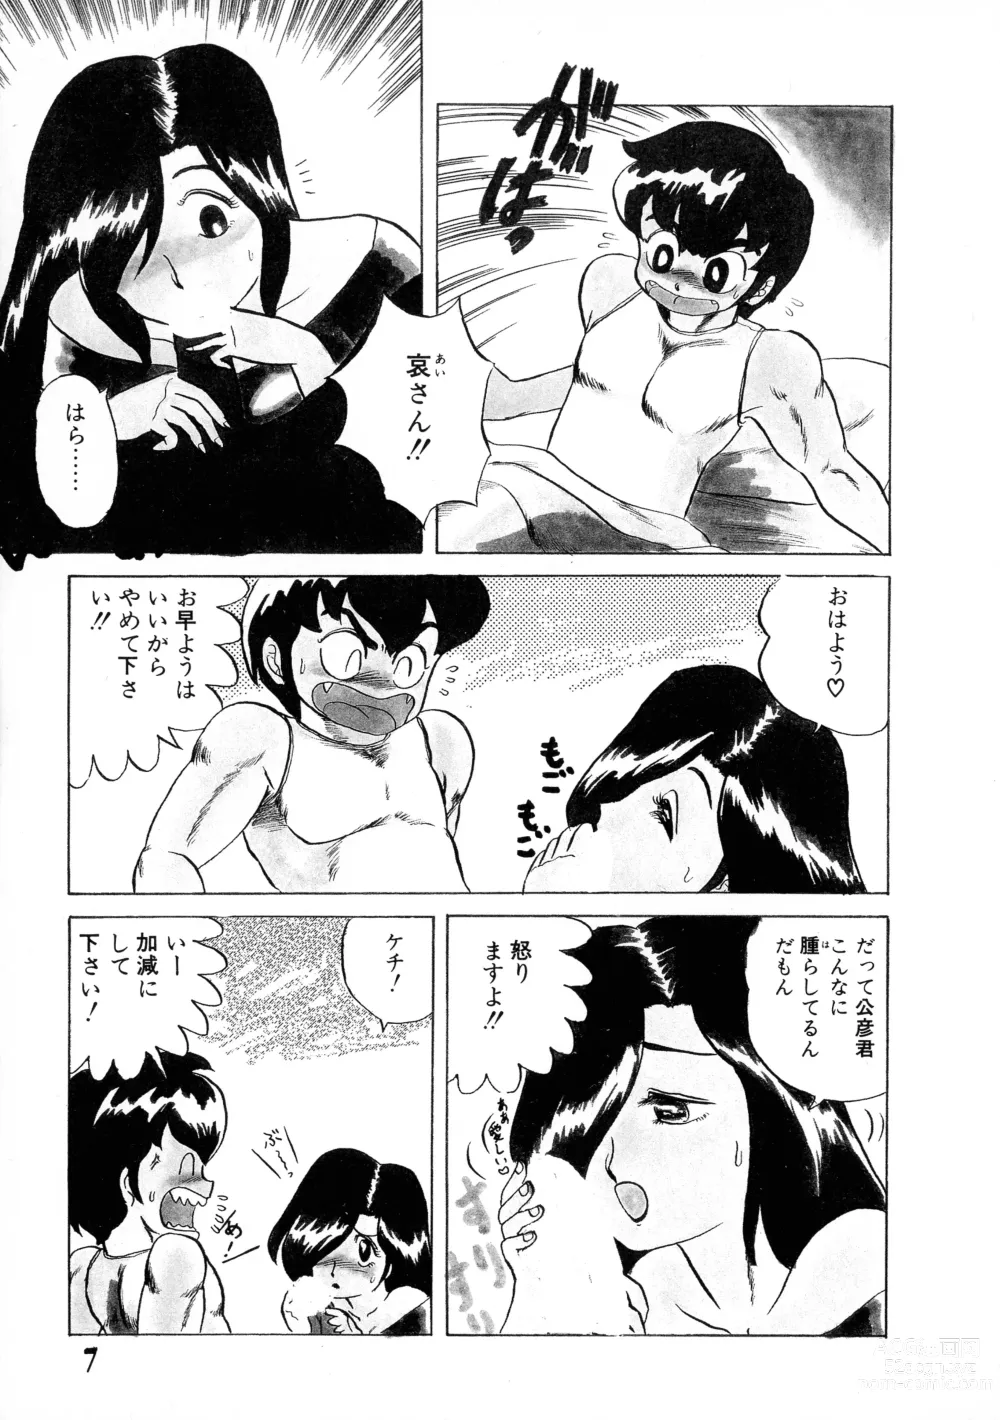 Page 7 of manga Akai Miwaku